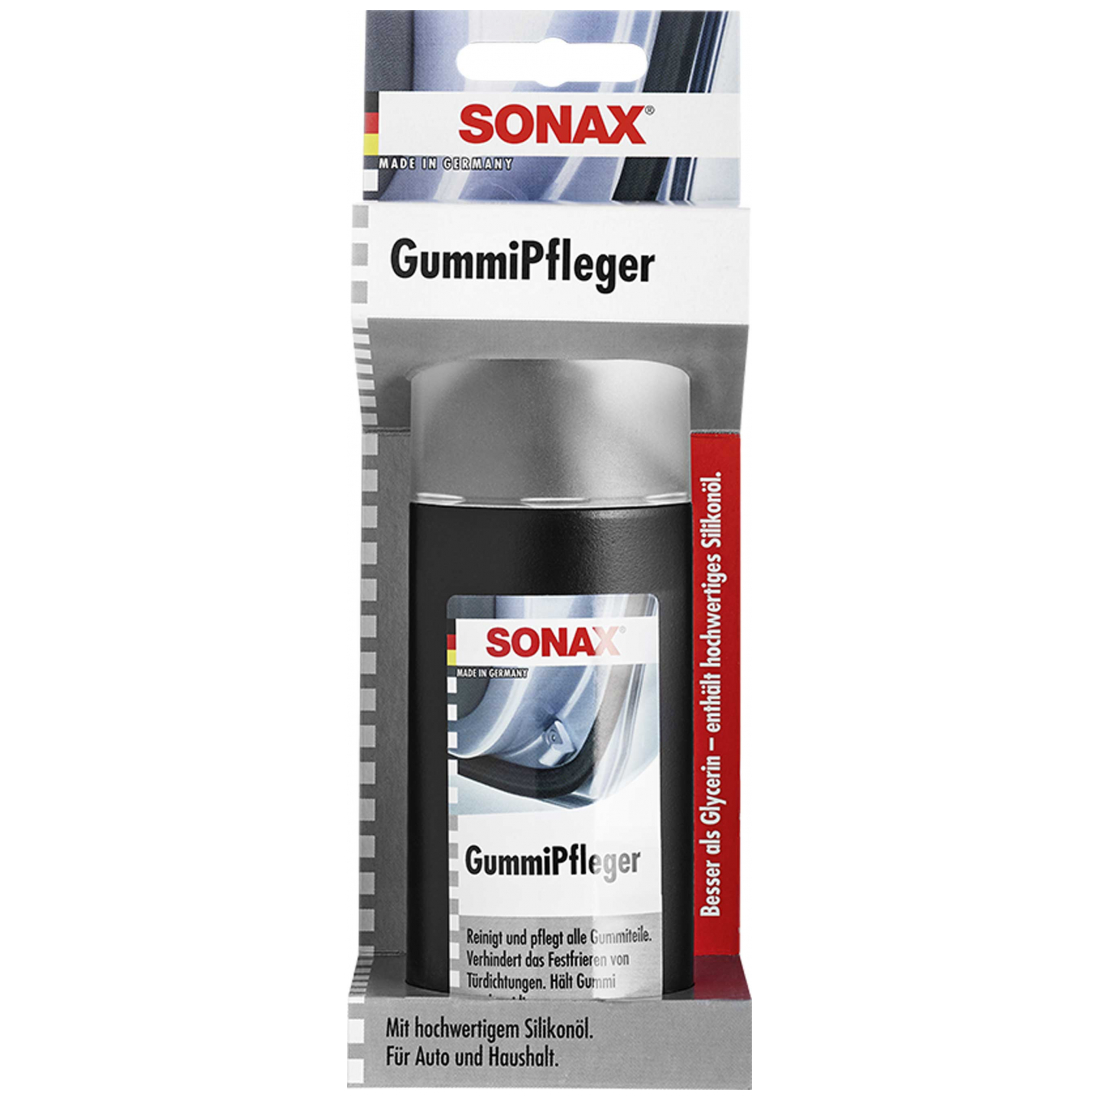 Sonax GummiPfleger Display 100ml